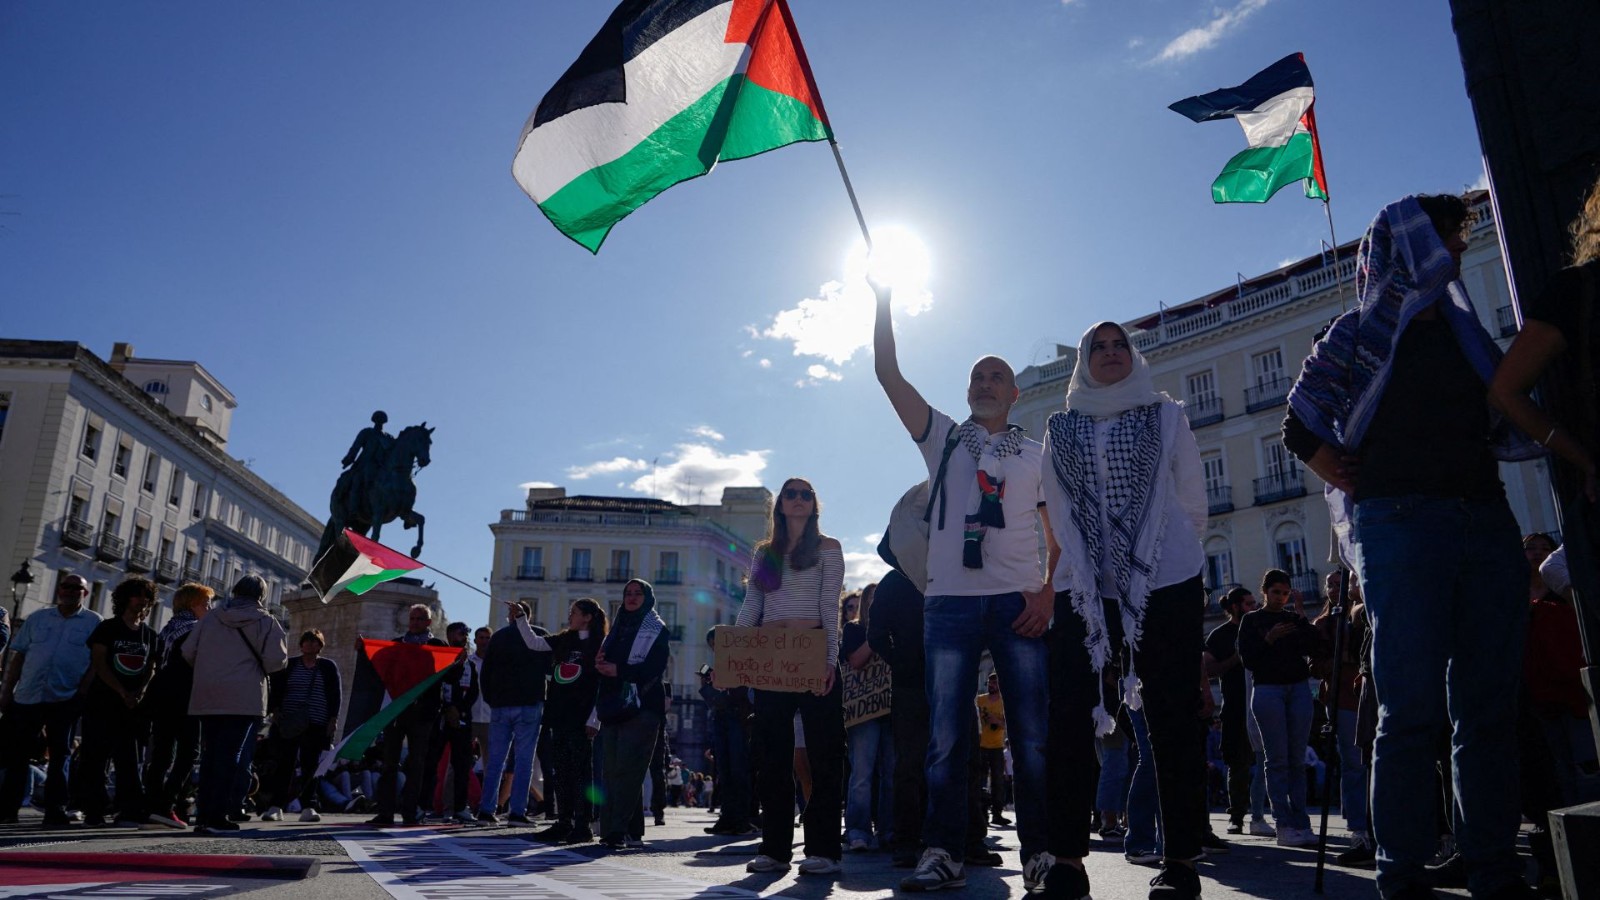  Spain intervenes in genocide case as Israeli strike hits Gaza school